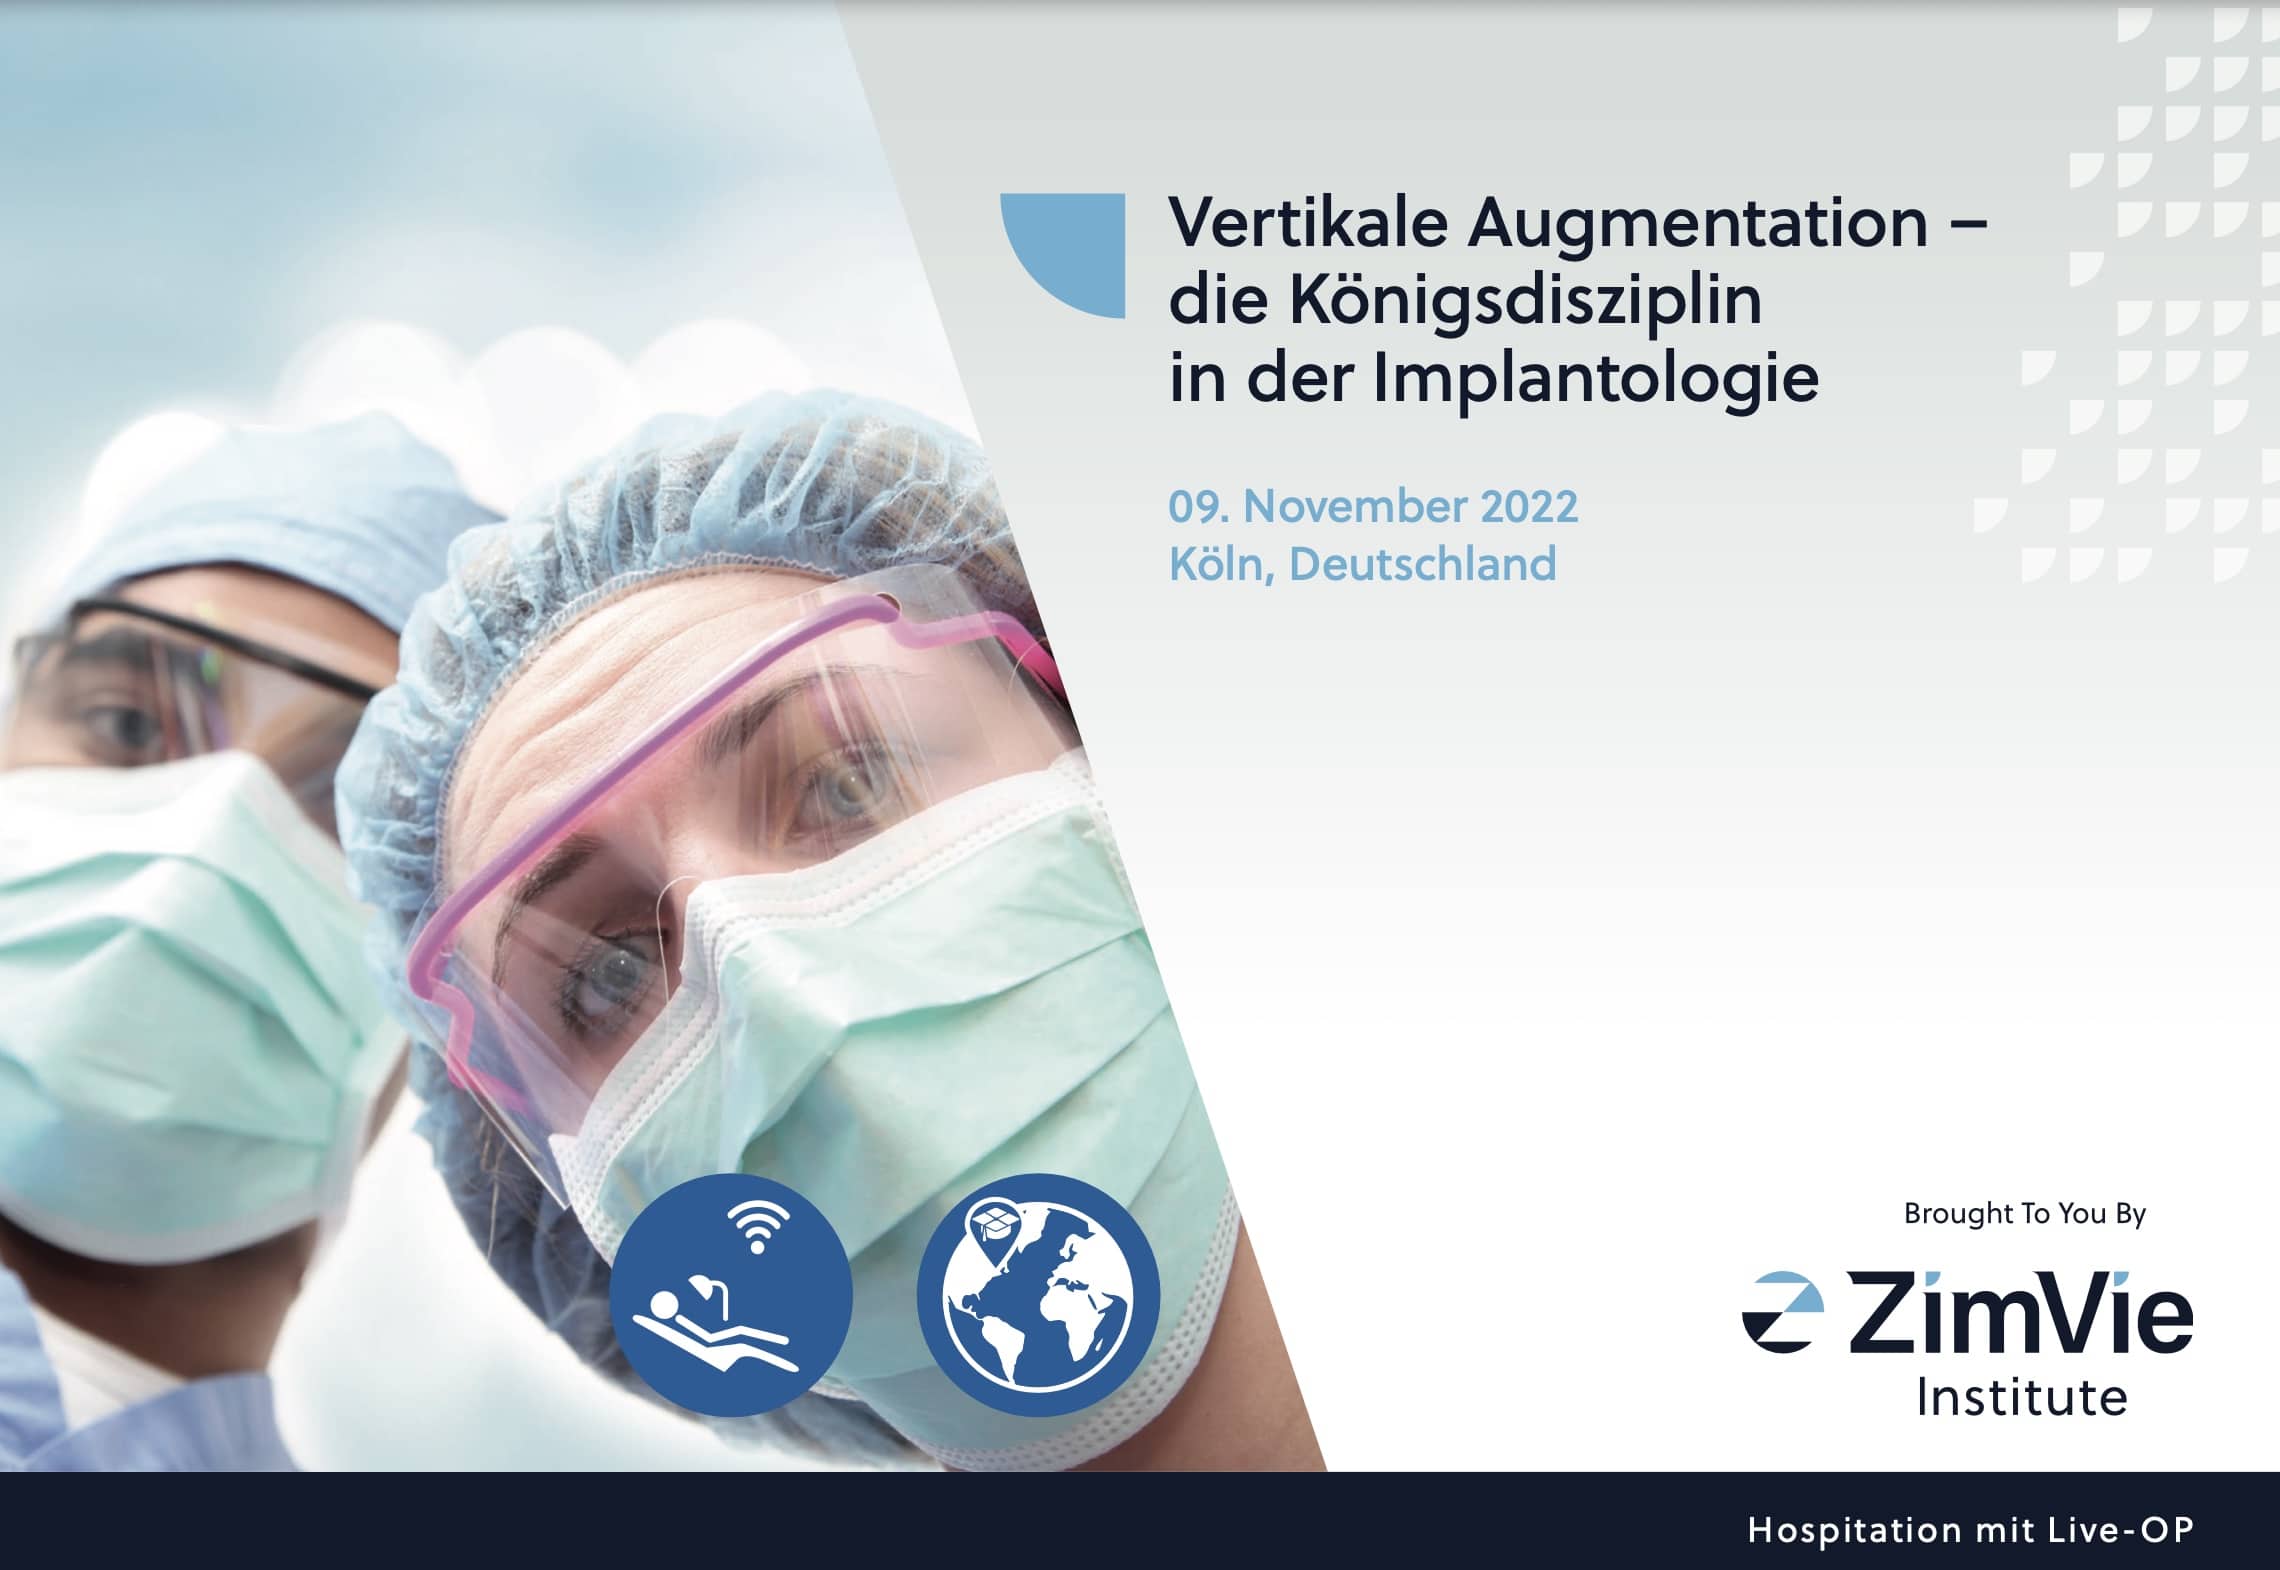 Vertikale Augmentation – die Königsdisziplin in der Implantologie